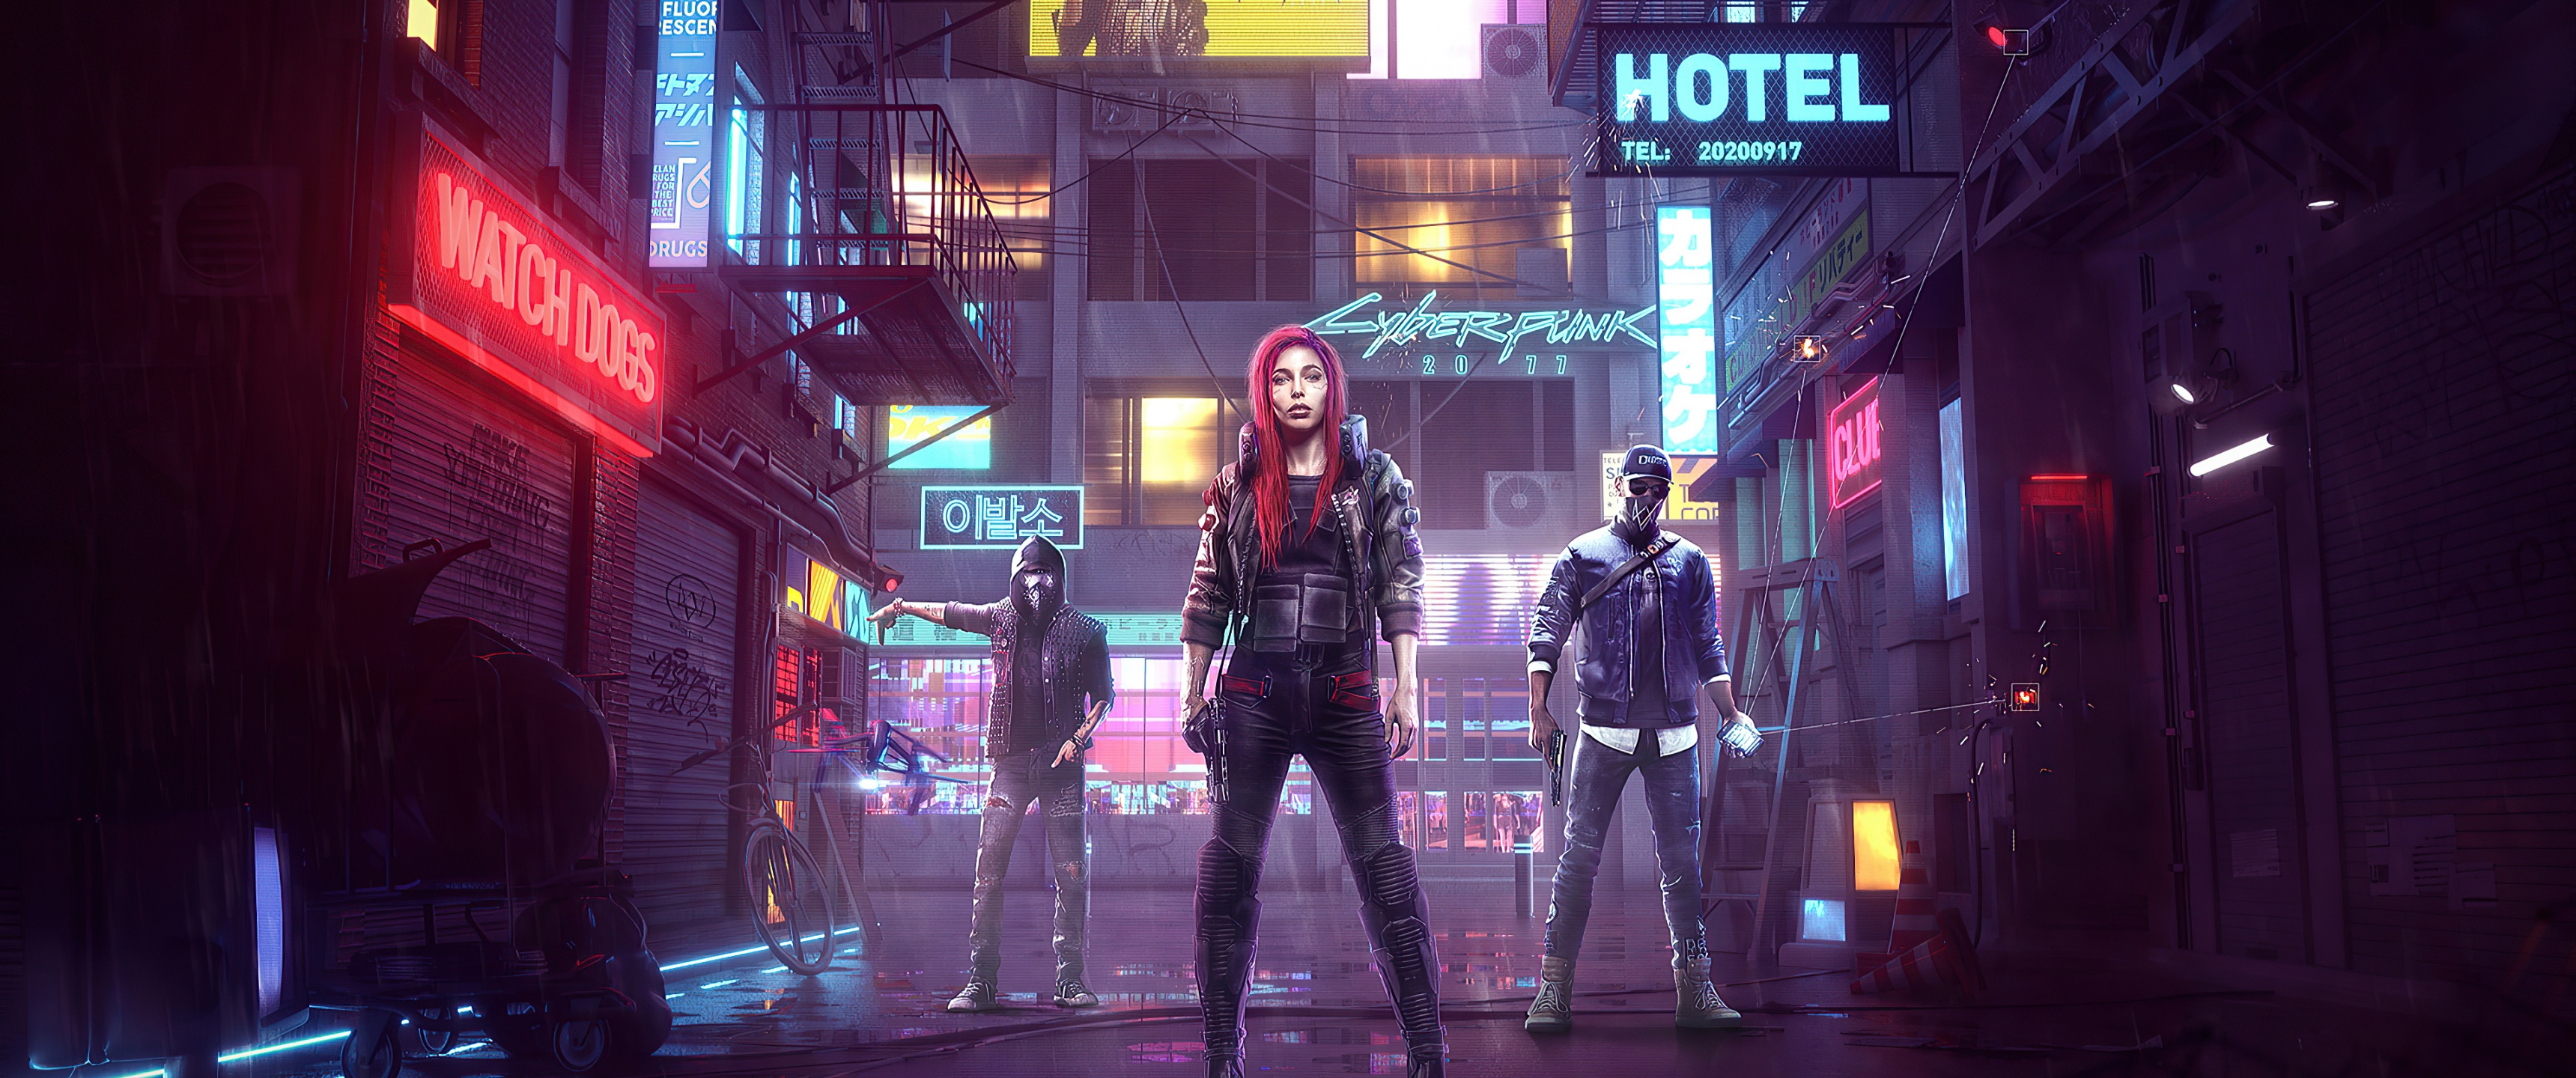 Download Ultrawide Cyberpunk Night City Buildings Wallpaper